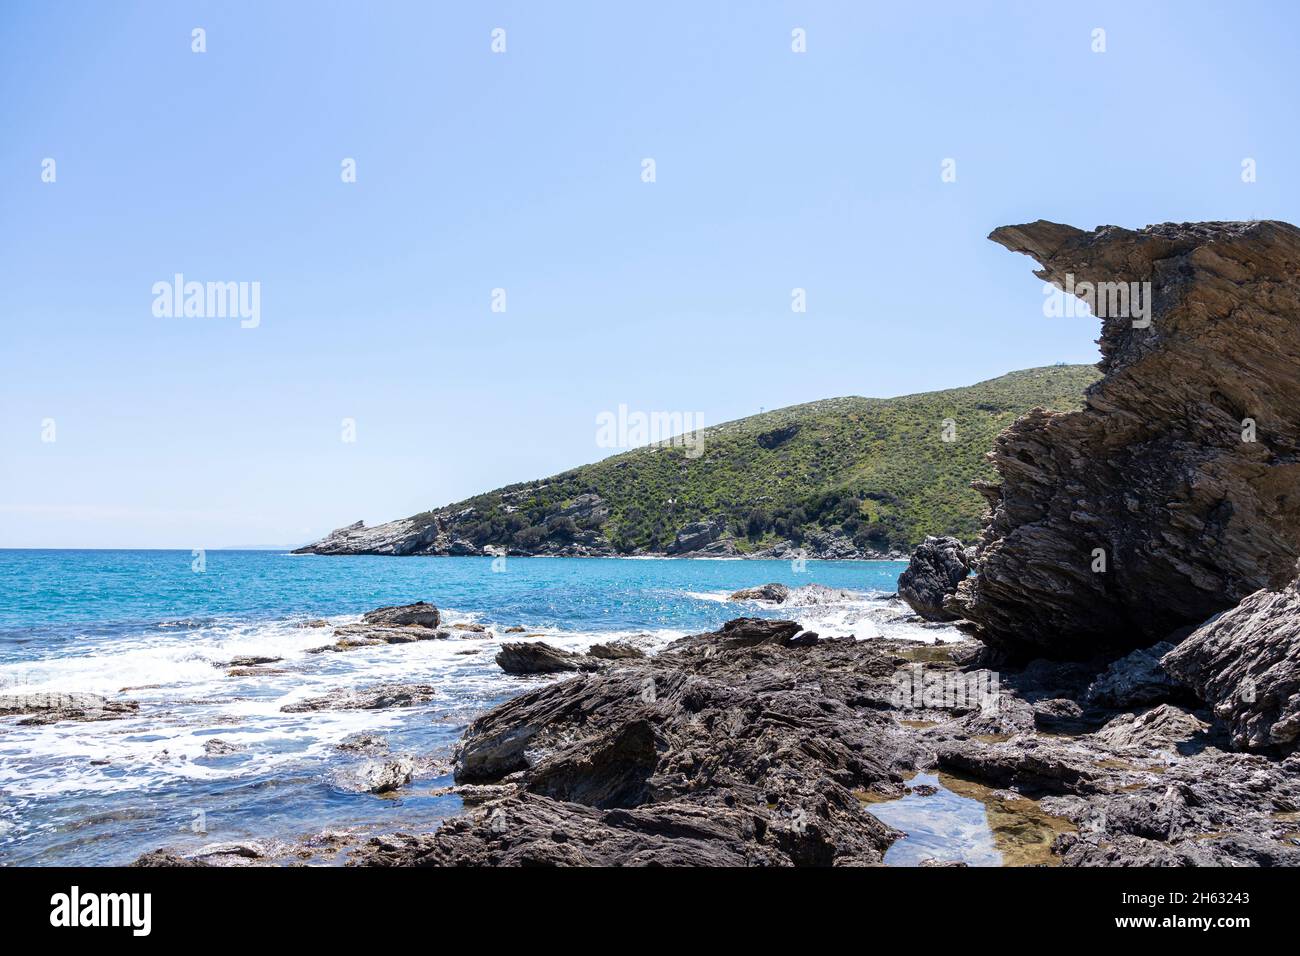 molto strano guardando rocce sulla spiaggia da qualche parte in grecia Foto Stock